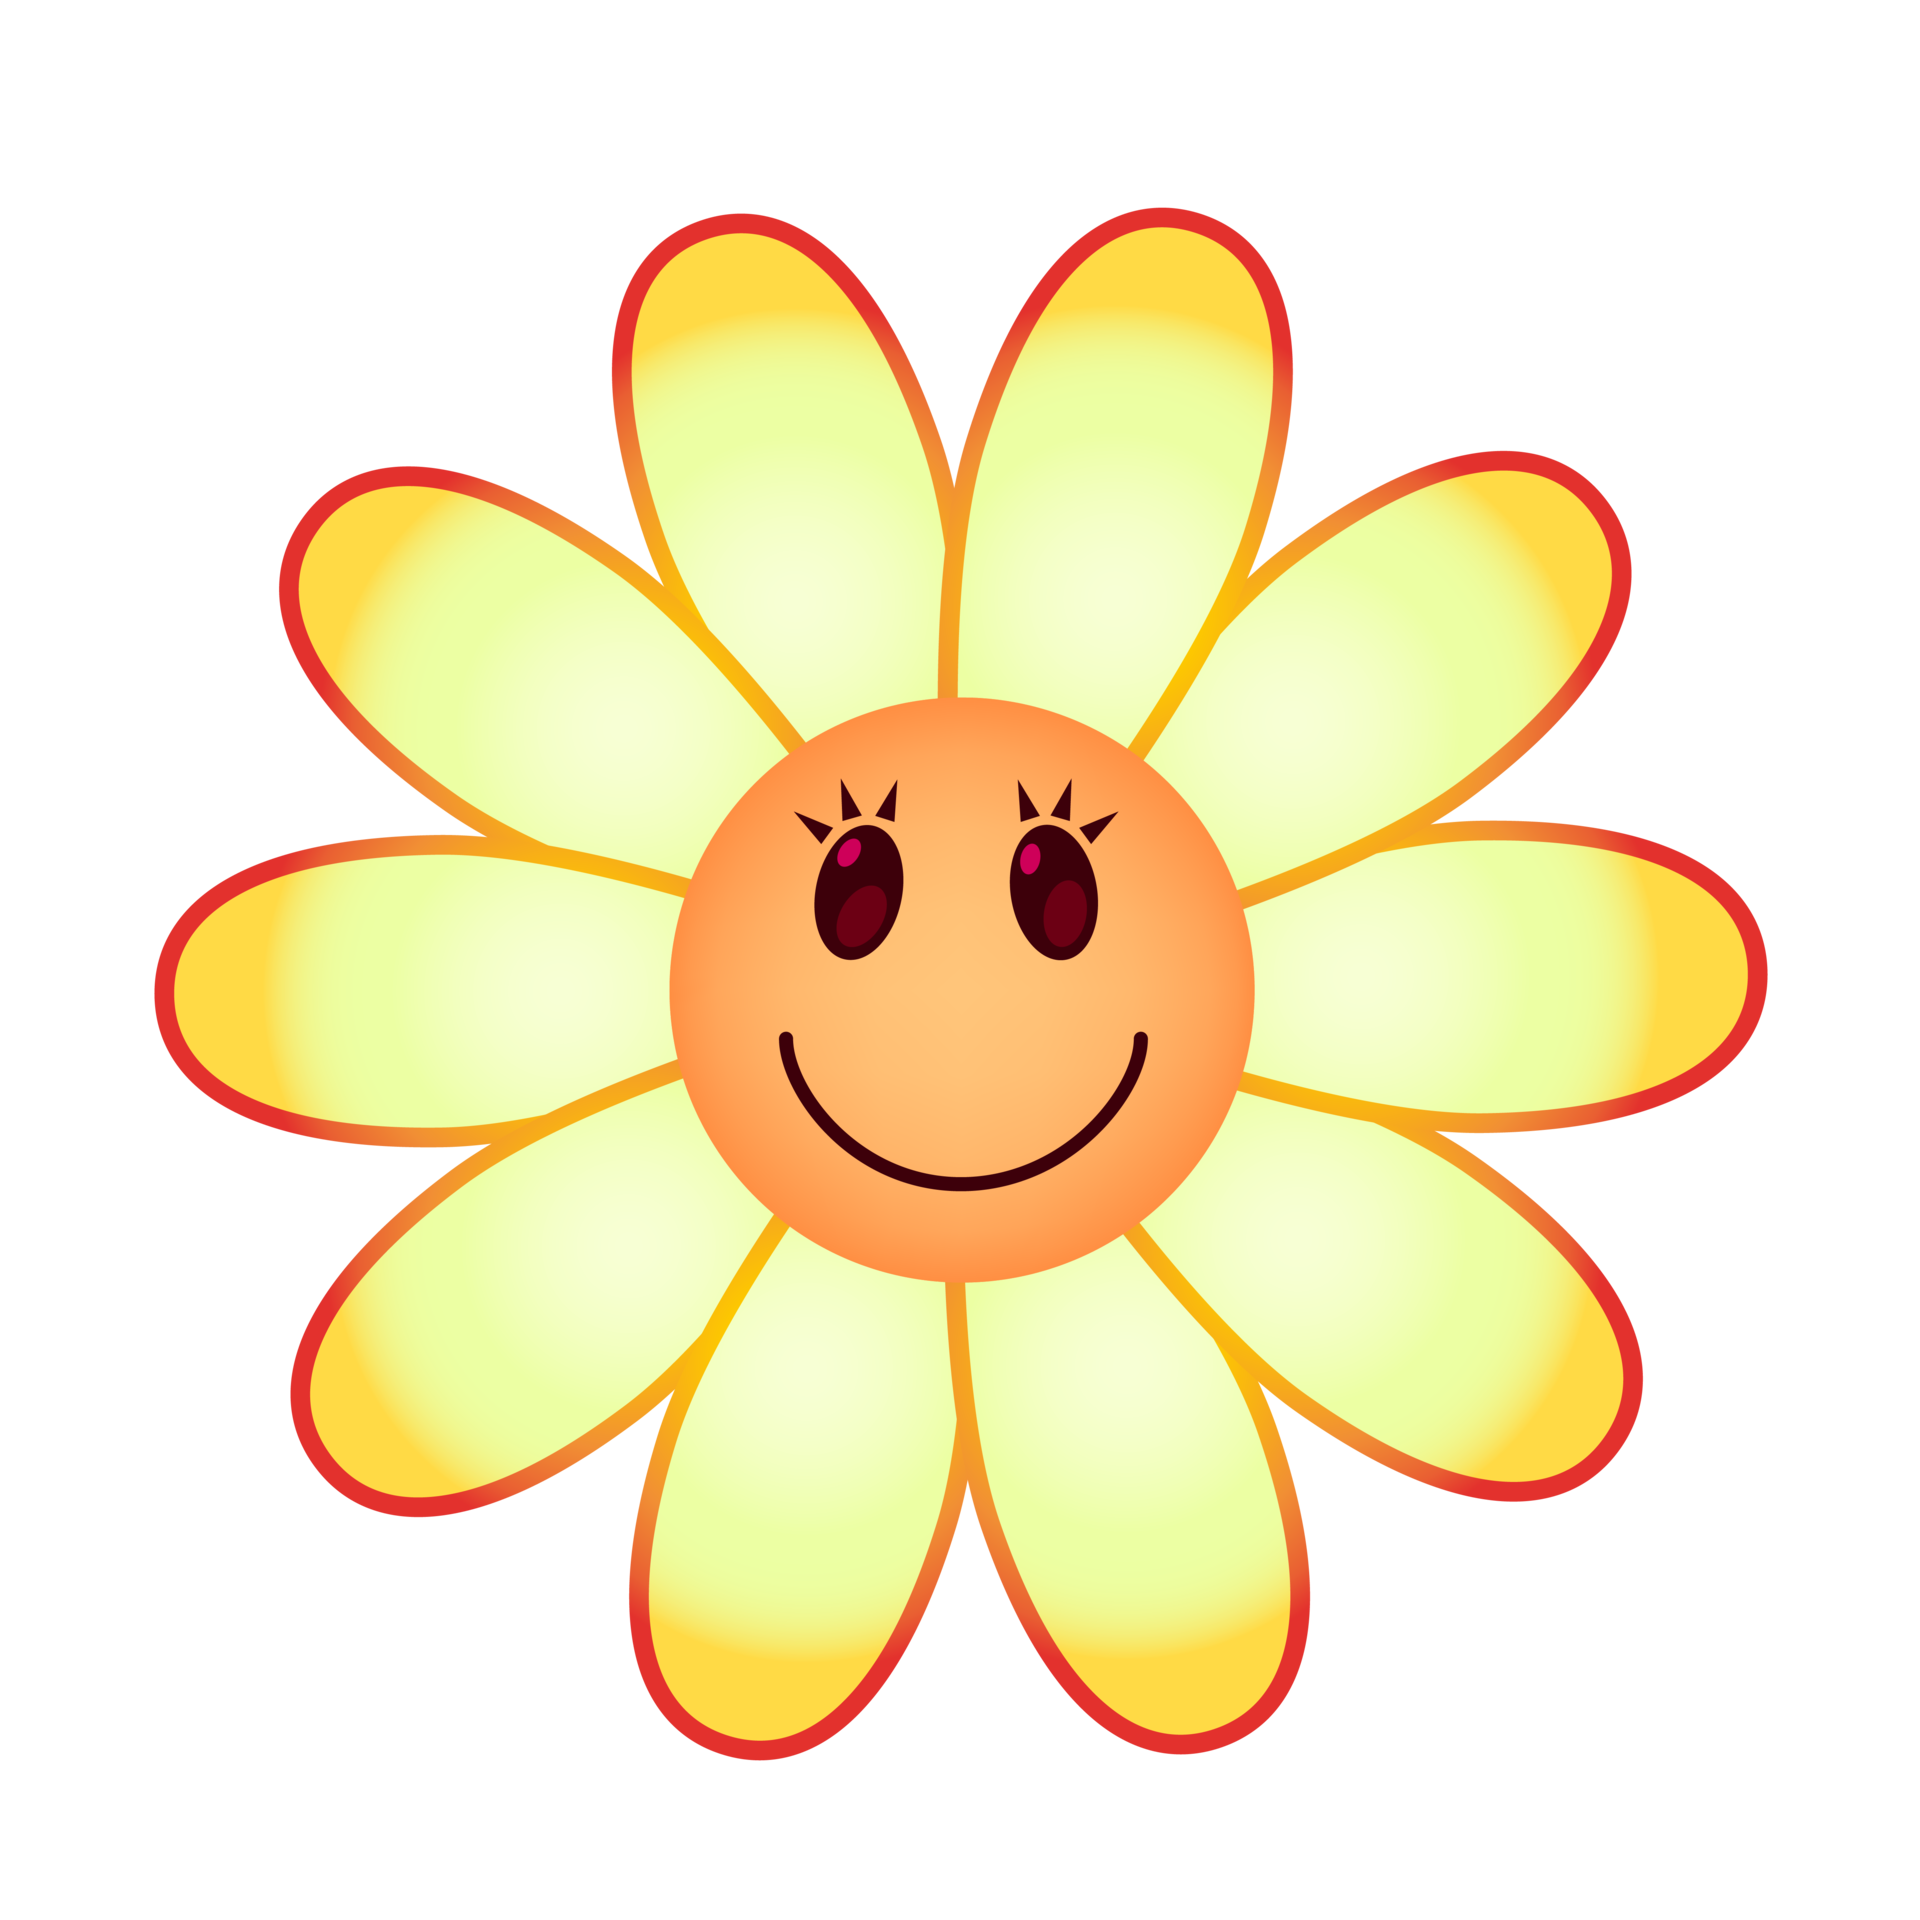 Hoa cười vui sắc màu tươi sáng: Những bó hoa cười tươi sáng là món quà tuyệt vời để mang lại niềm vui và hạnh phúc cho những người thân yêu. Những gam màu tươi sáng và hình ảnh hoa cười của chúng sẽ mang lại cho bạn cảm giác vừa tươi mới lại đầy sức sống. Hãy cùng đắm mình trong khoảnh khắc đầy màu sắc và hạnh phúc này.